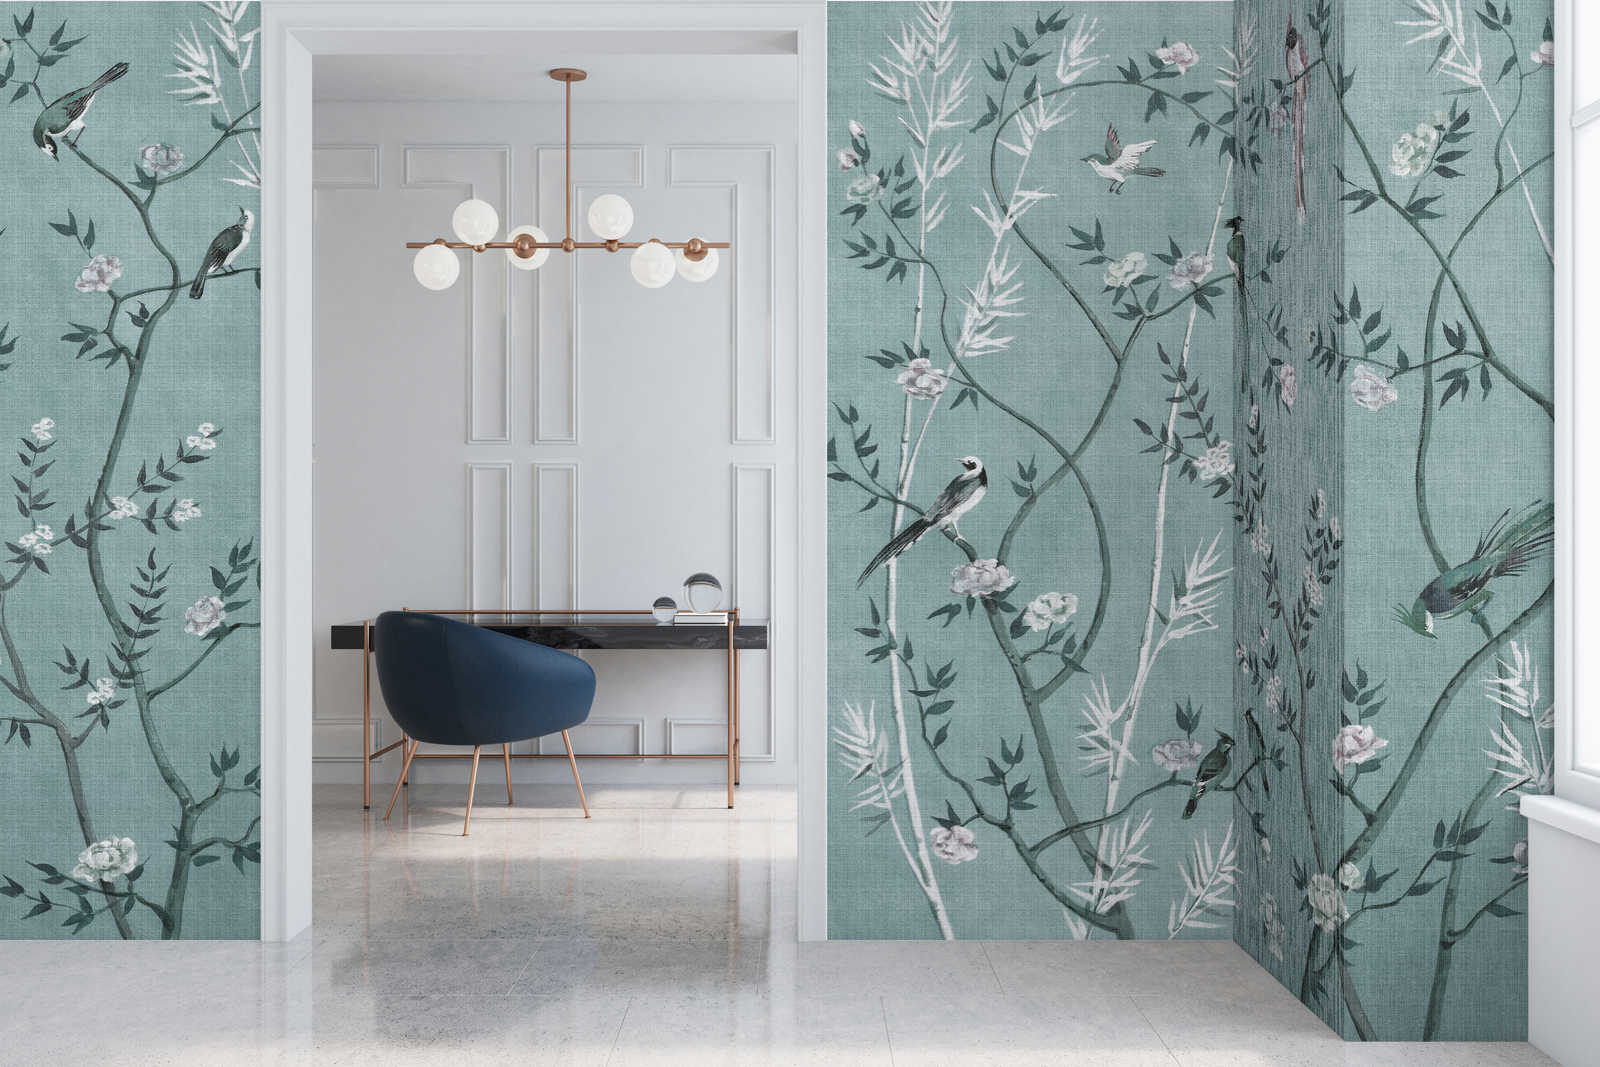             Tea Room 1 - Papier peint panoramique Oiseaux & fleurs Design en pétrole & blanc
        